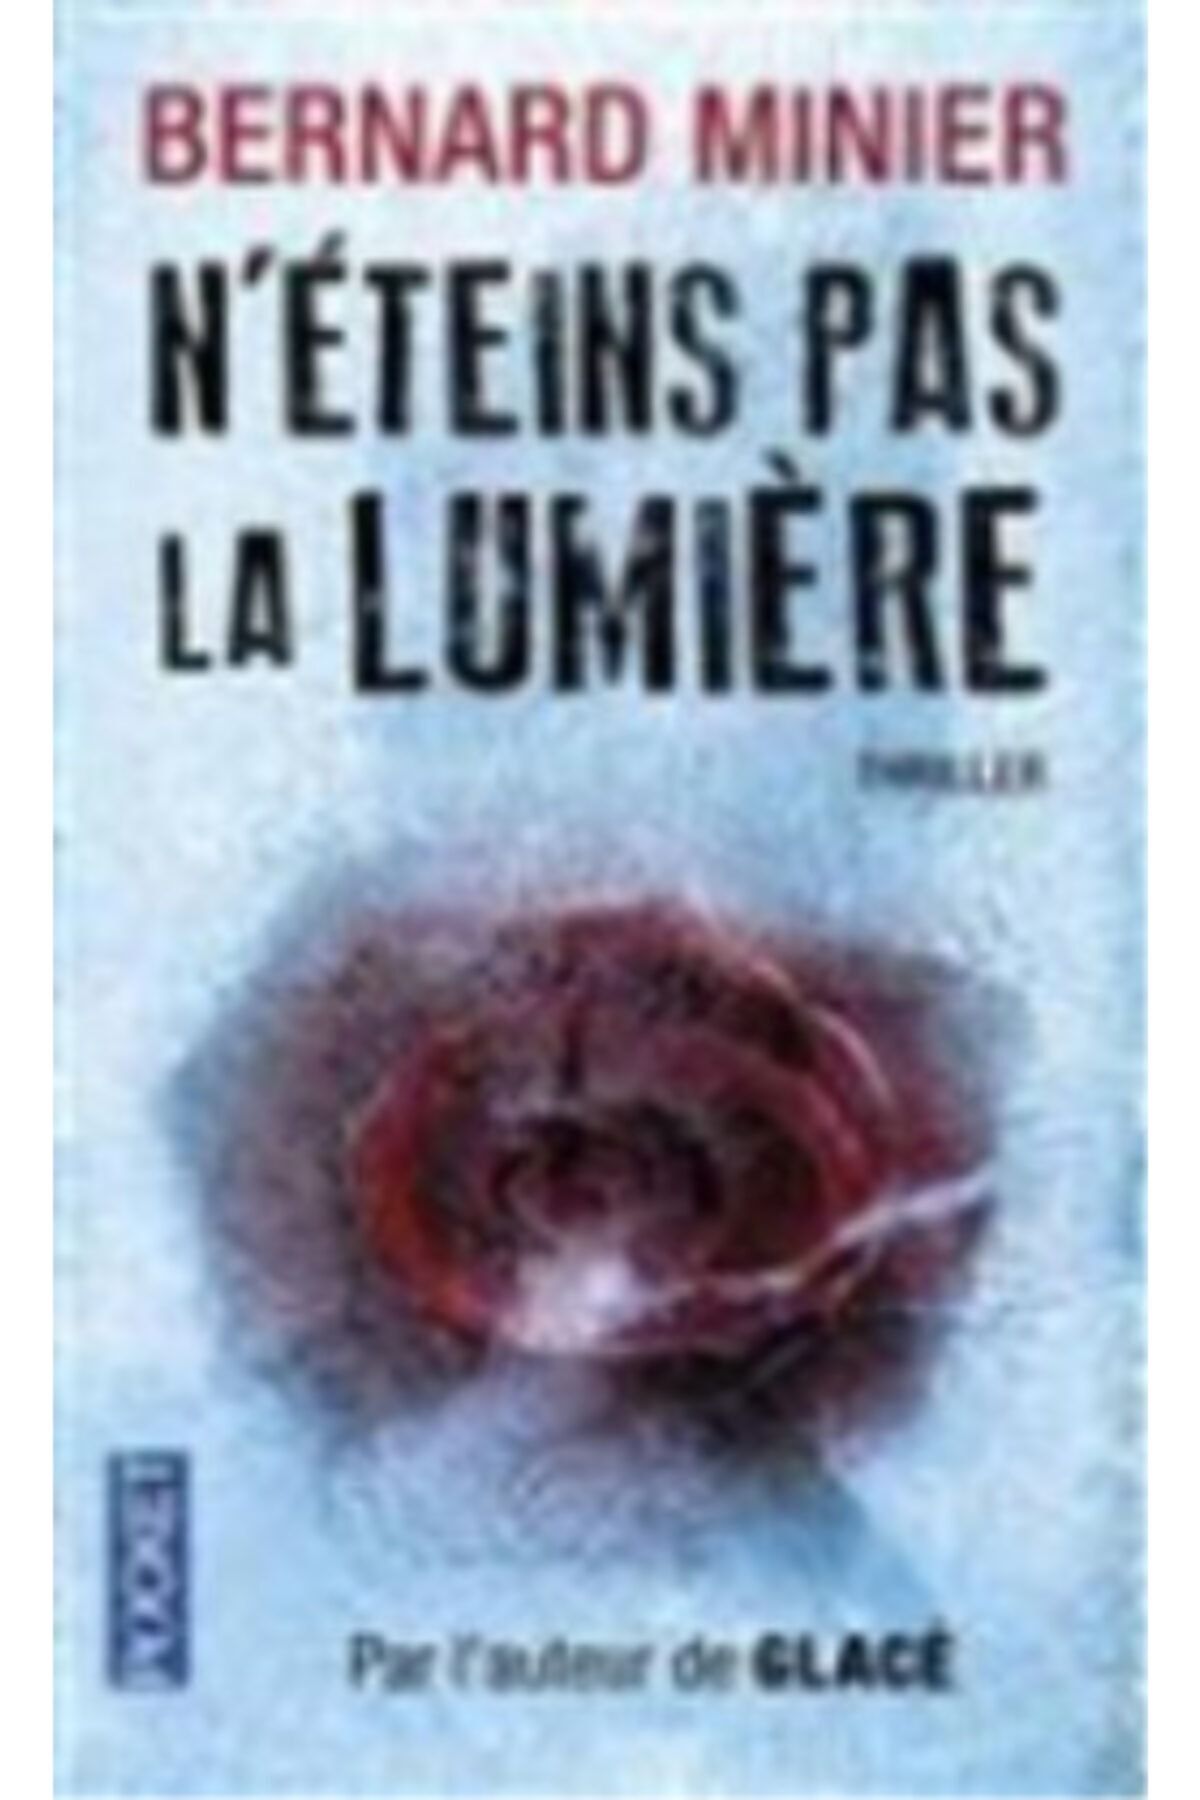 Arkadaş Yayıncılık N'eteins Pas La Lumiere